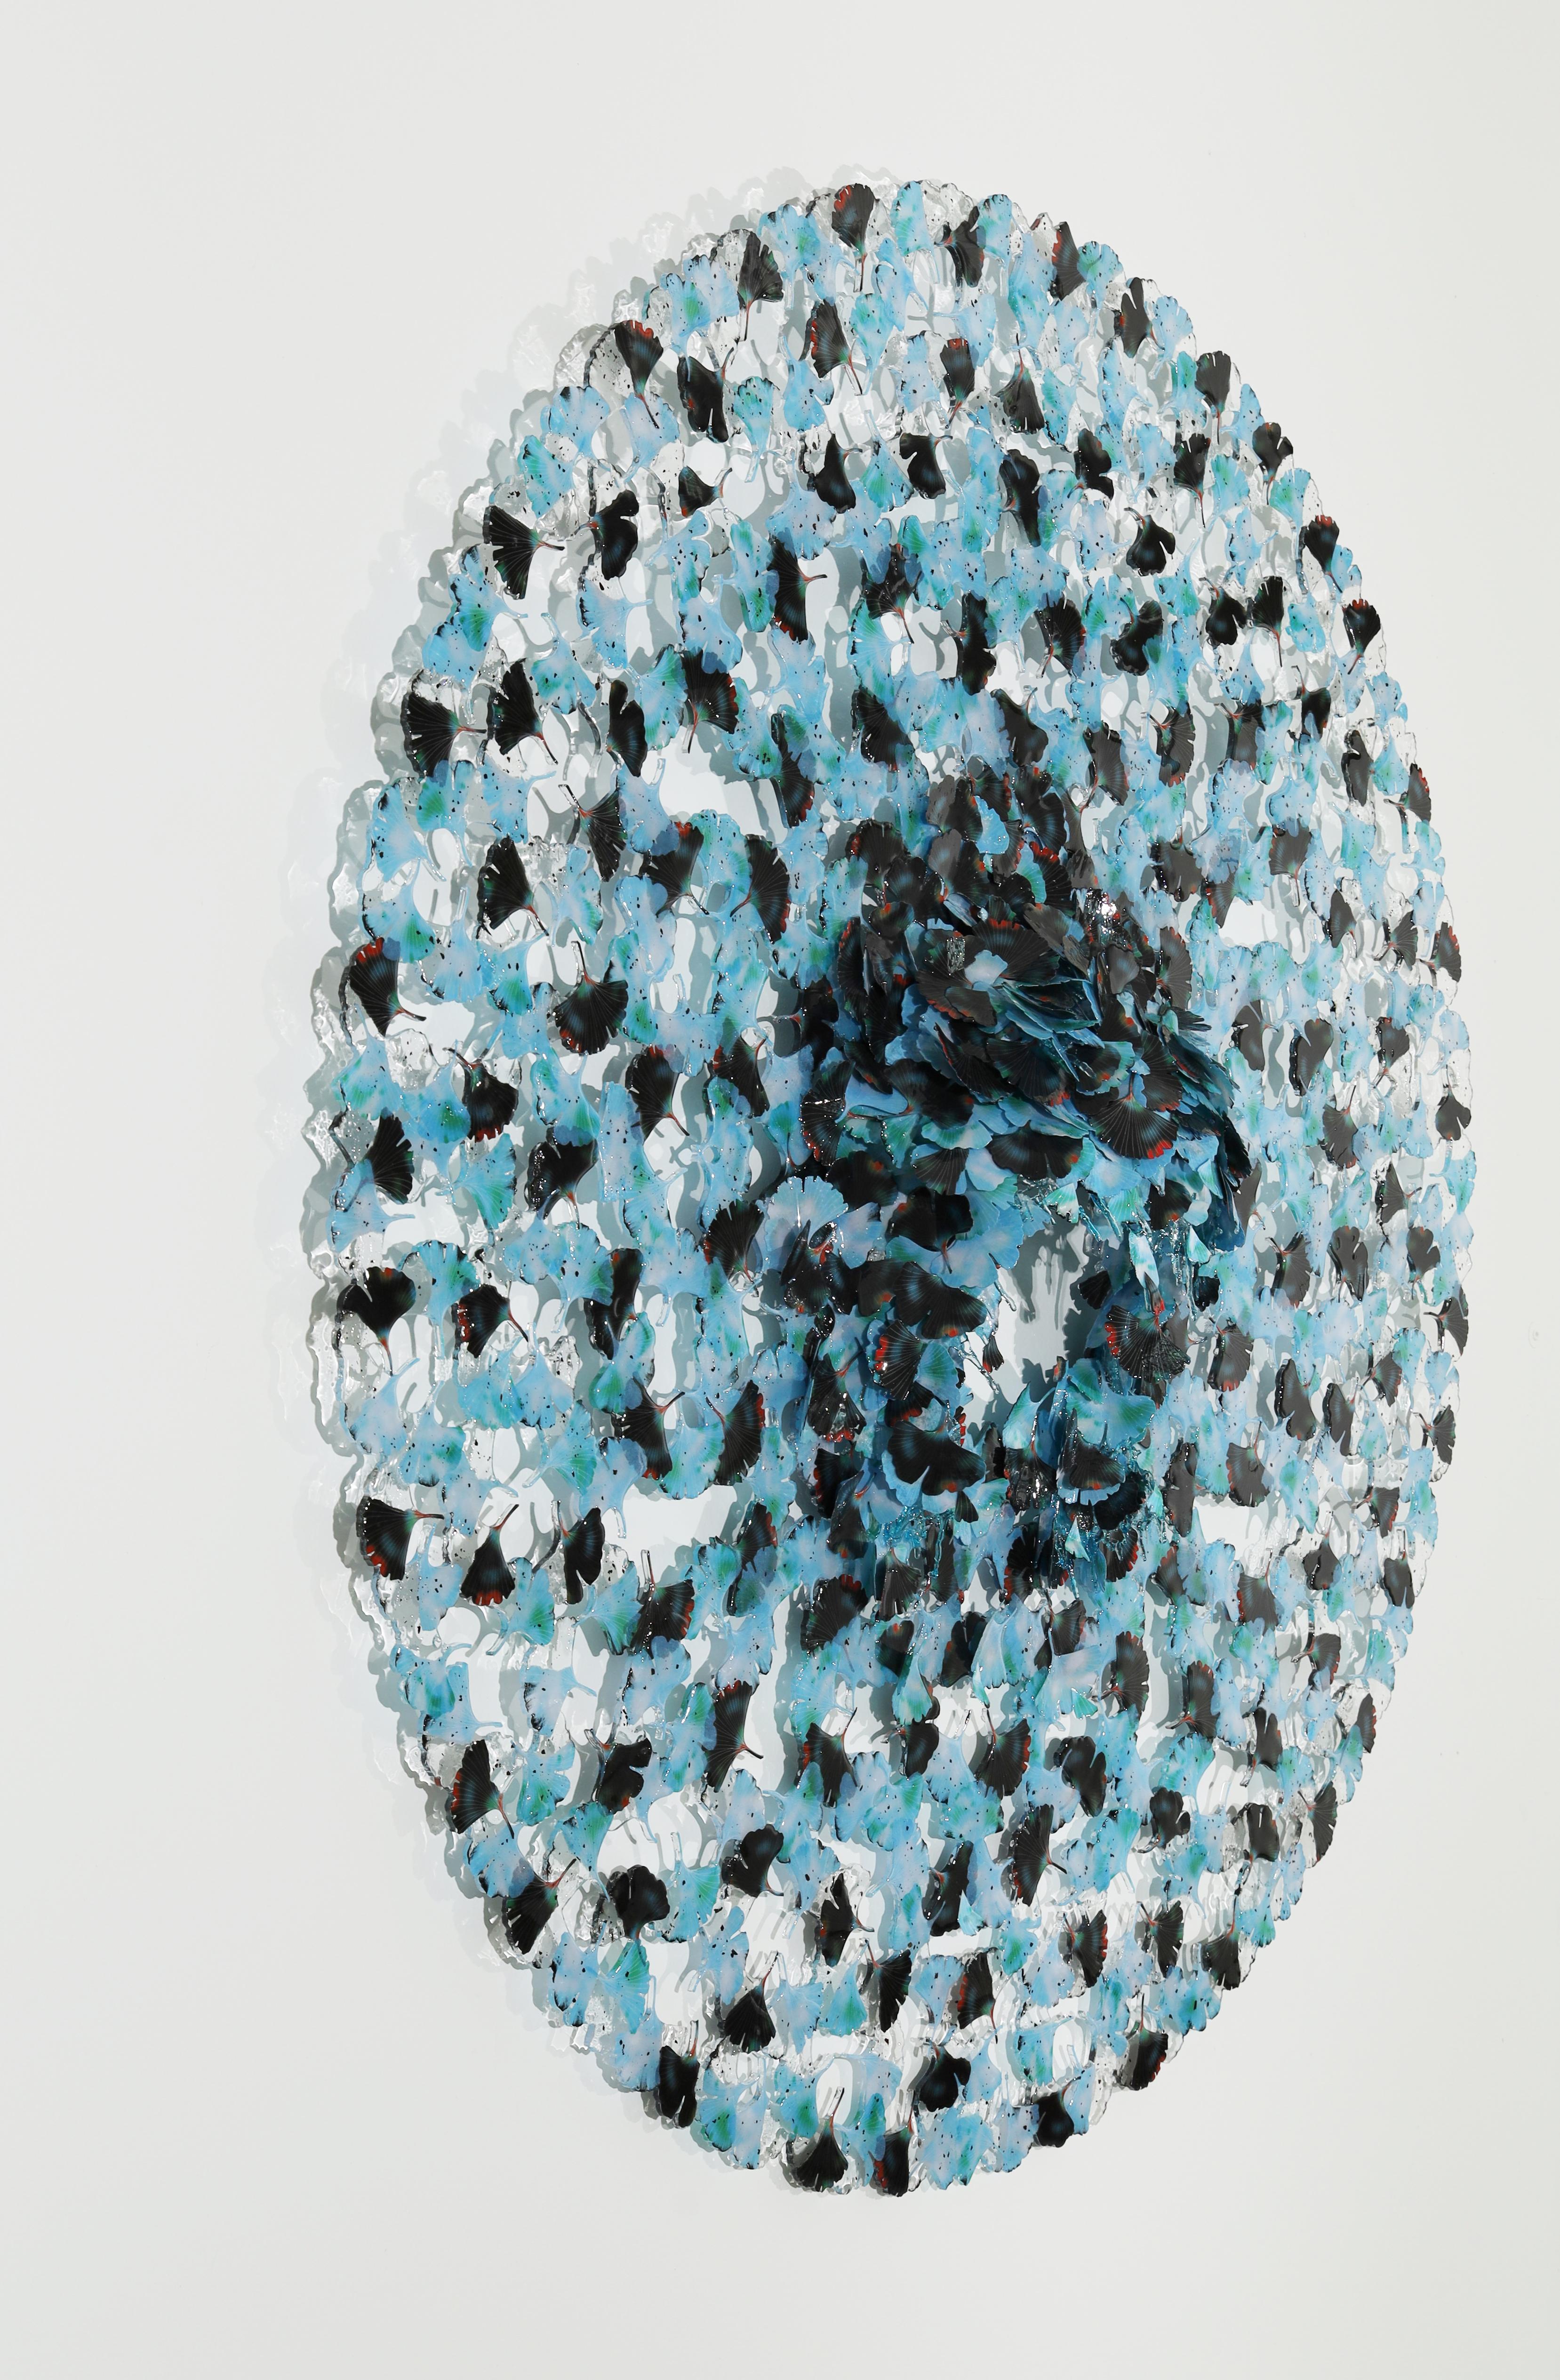 Cravate de rêve, bulle bleue Ginkgo  - Abstrait Sculpture par Annalù